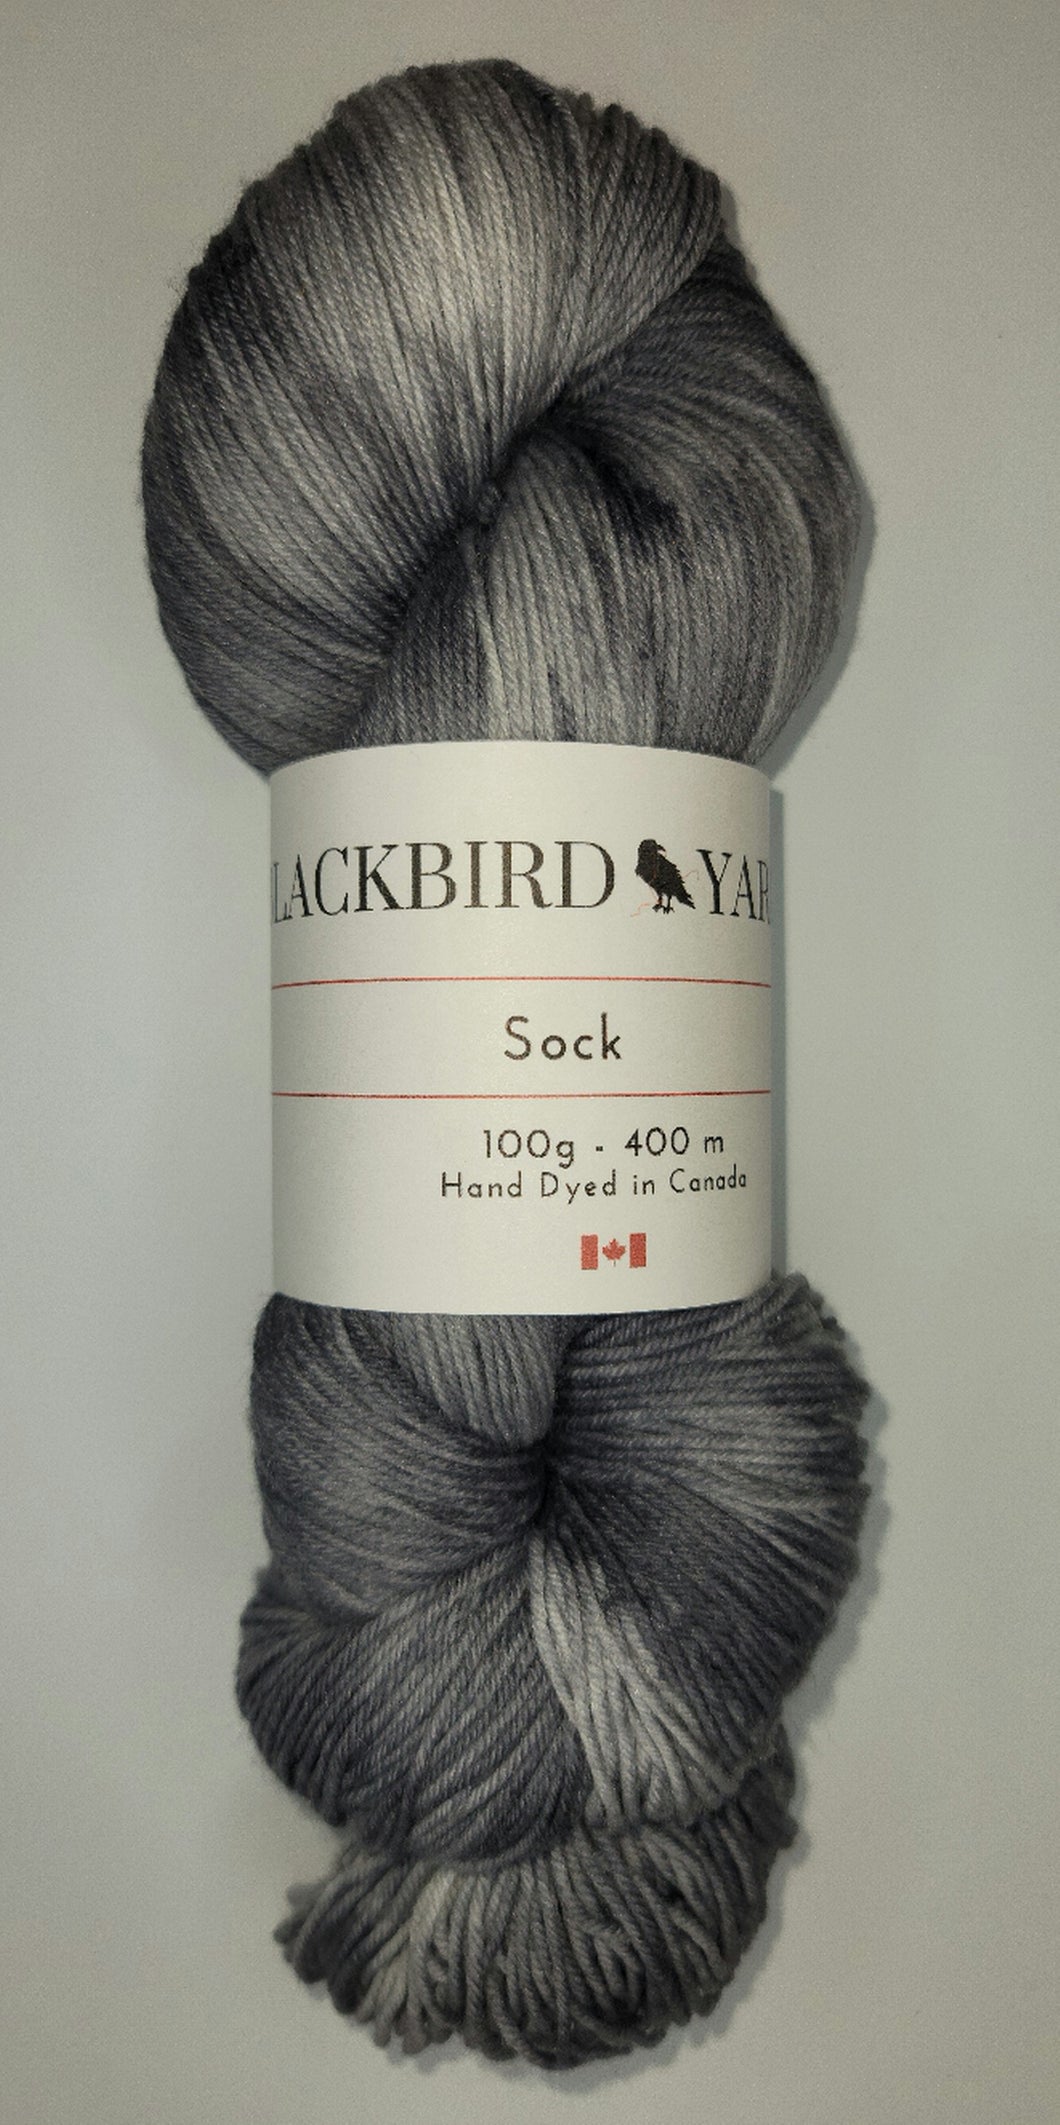 Blackbird Yarns Sock yarn